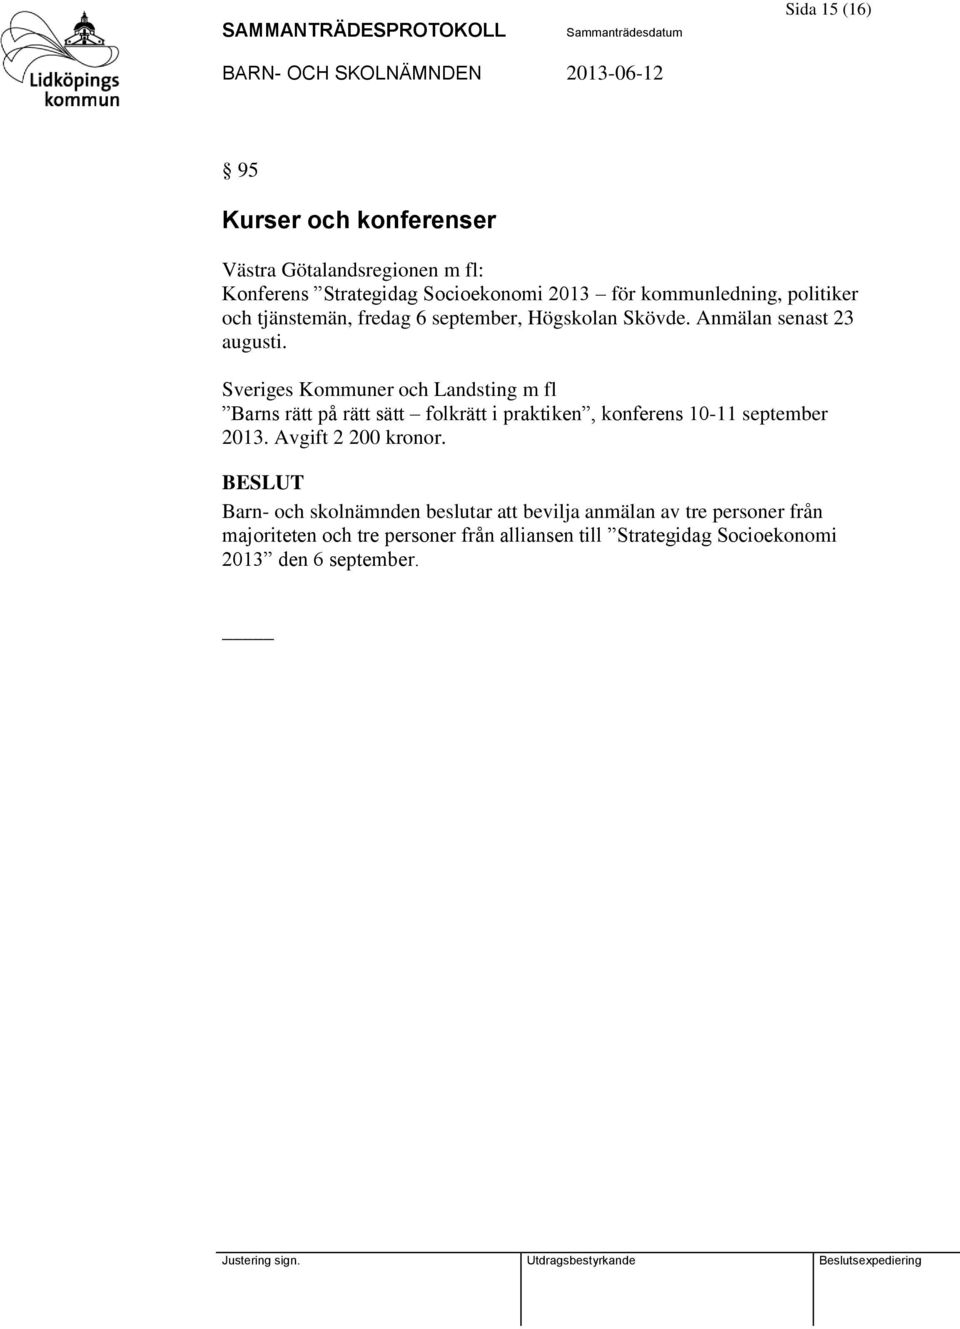 Sveriges Kommuner och Landsting m fl Barns rätt på rätt sätt folkrätt i praktiken, konferens 10-11 september 2013.